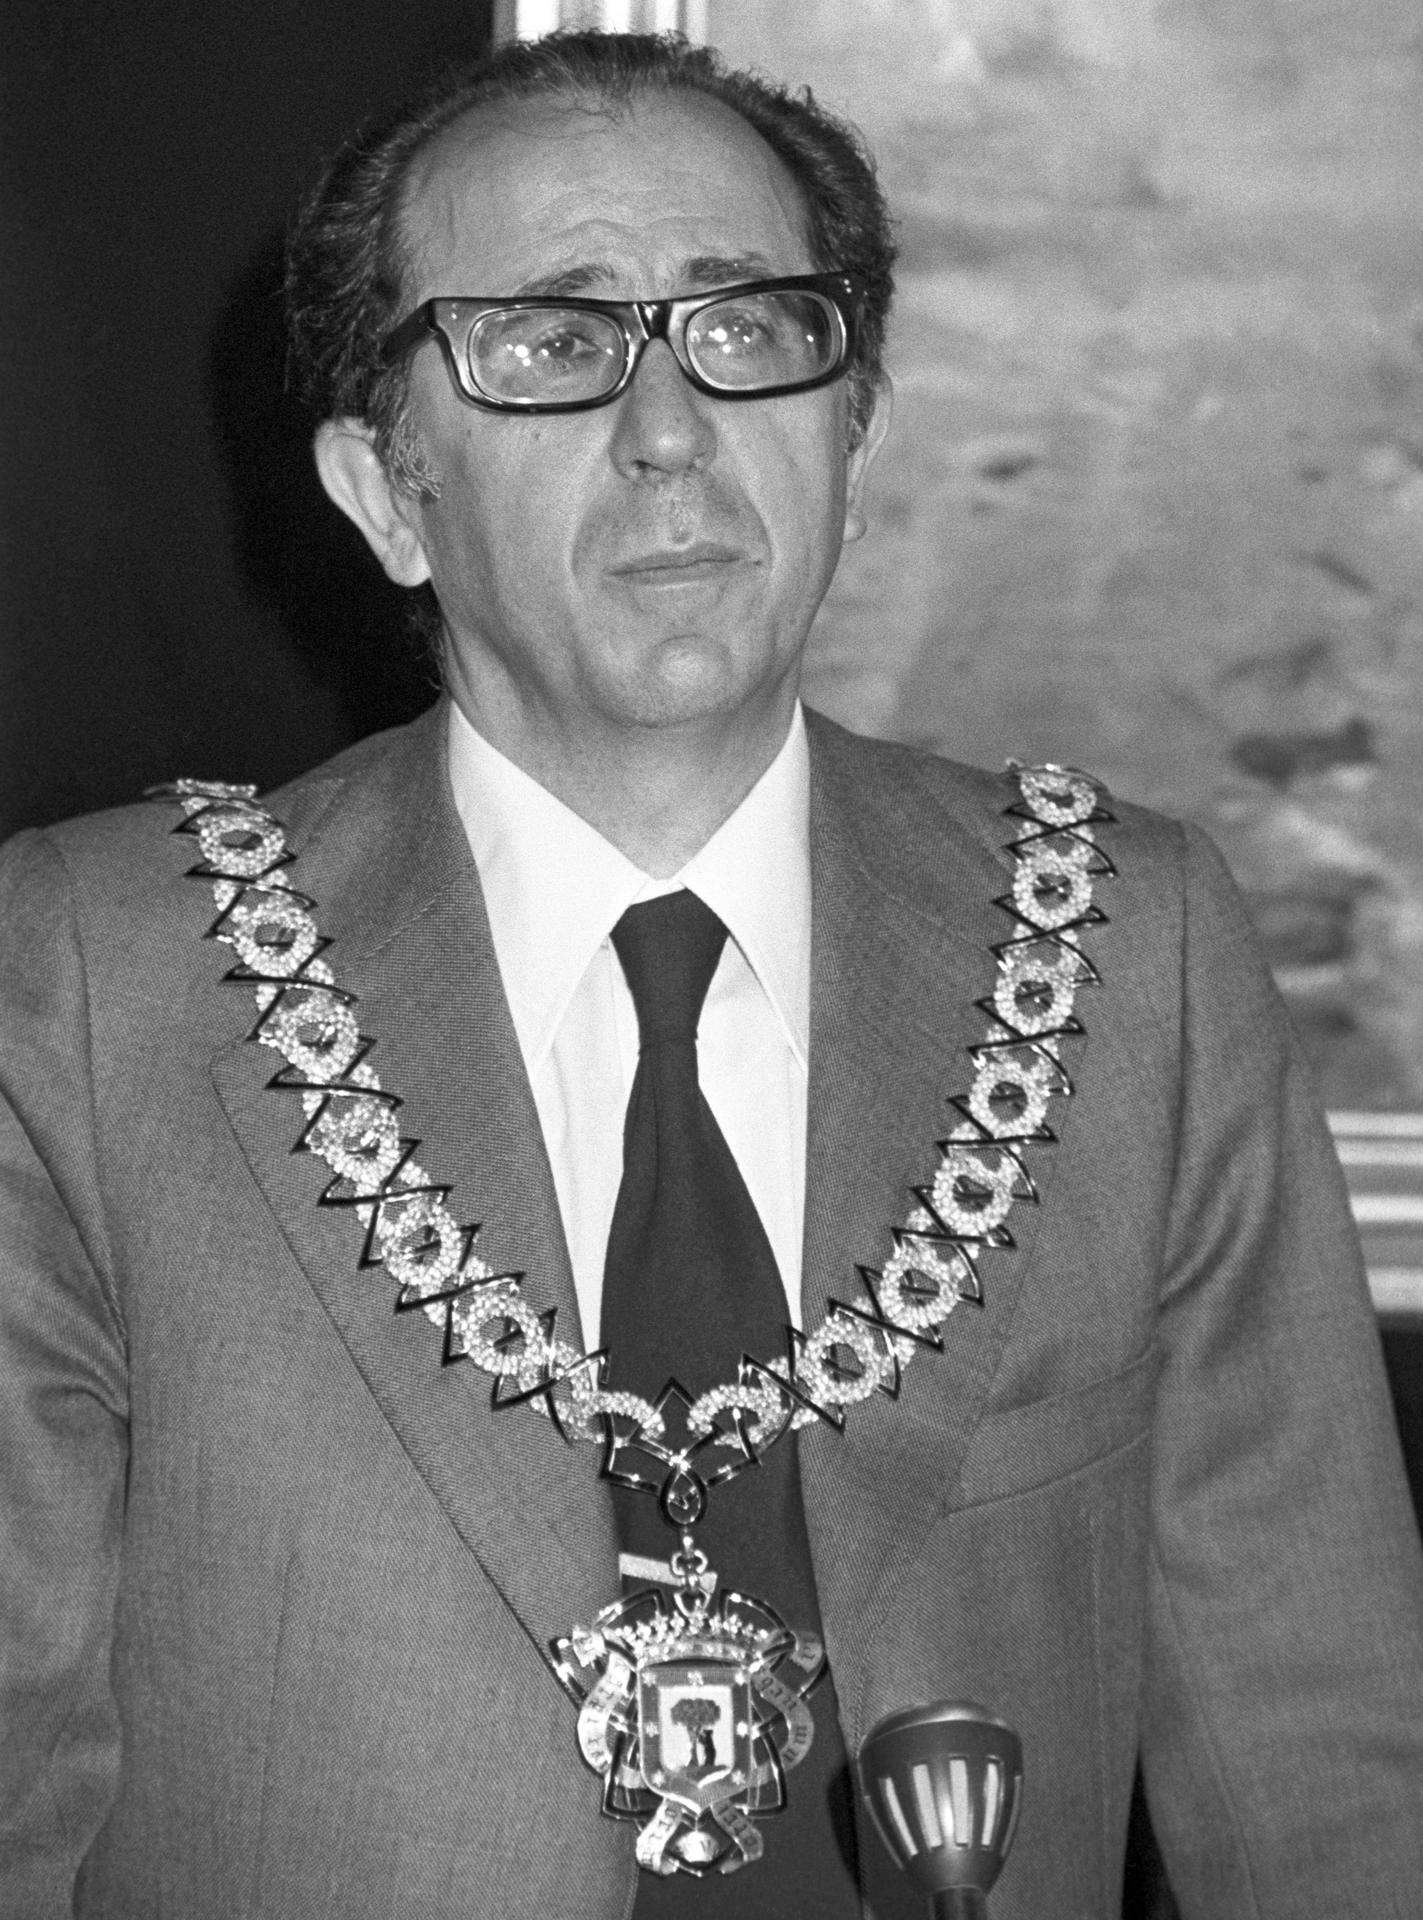 Fotografía de archivo, tomada el 03/03/1978 durante la toma de posesión de su cargo como alcalde de Madrid, de José Luis Álvarez Álvarez. EFE/Archivo